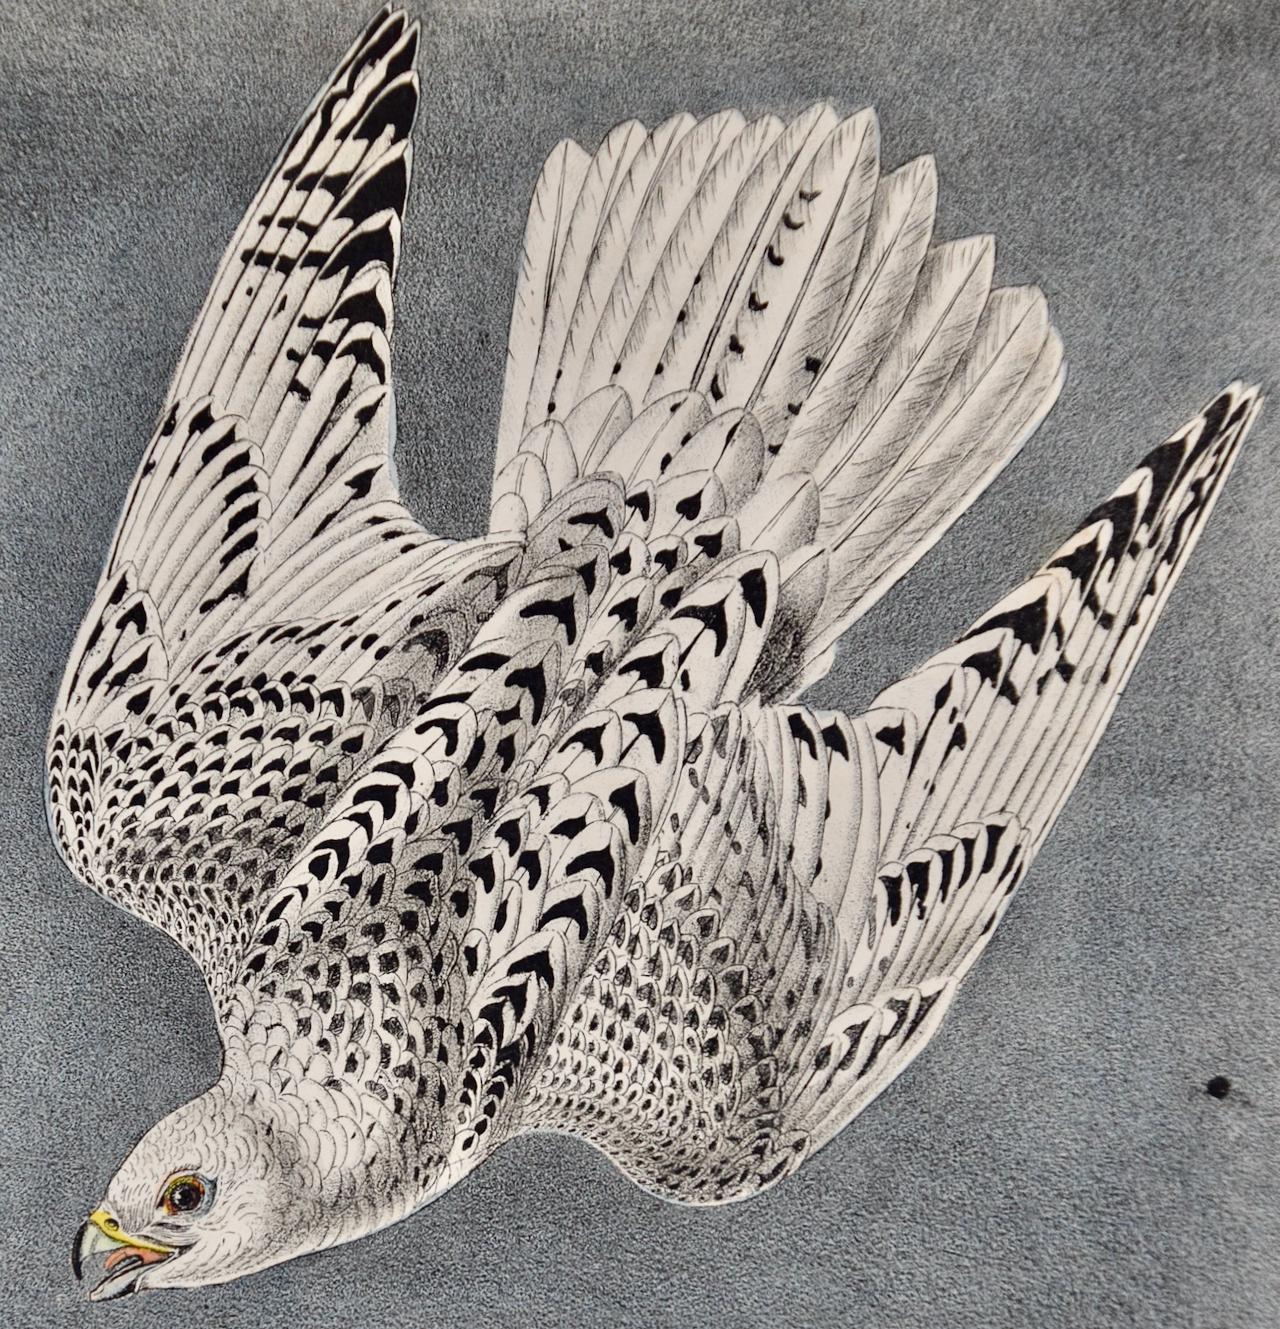 Iceland or Gyr Falcon: Ein Original, 1. Auflage. Handkolorierte Vogellithographie von Audubon  (Naturalismus), Print, von John James Audubon